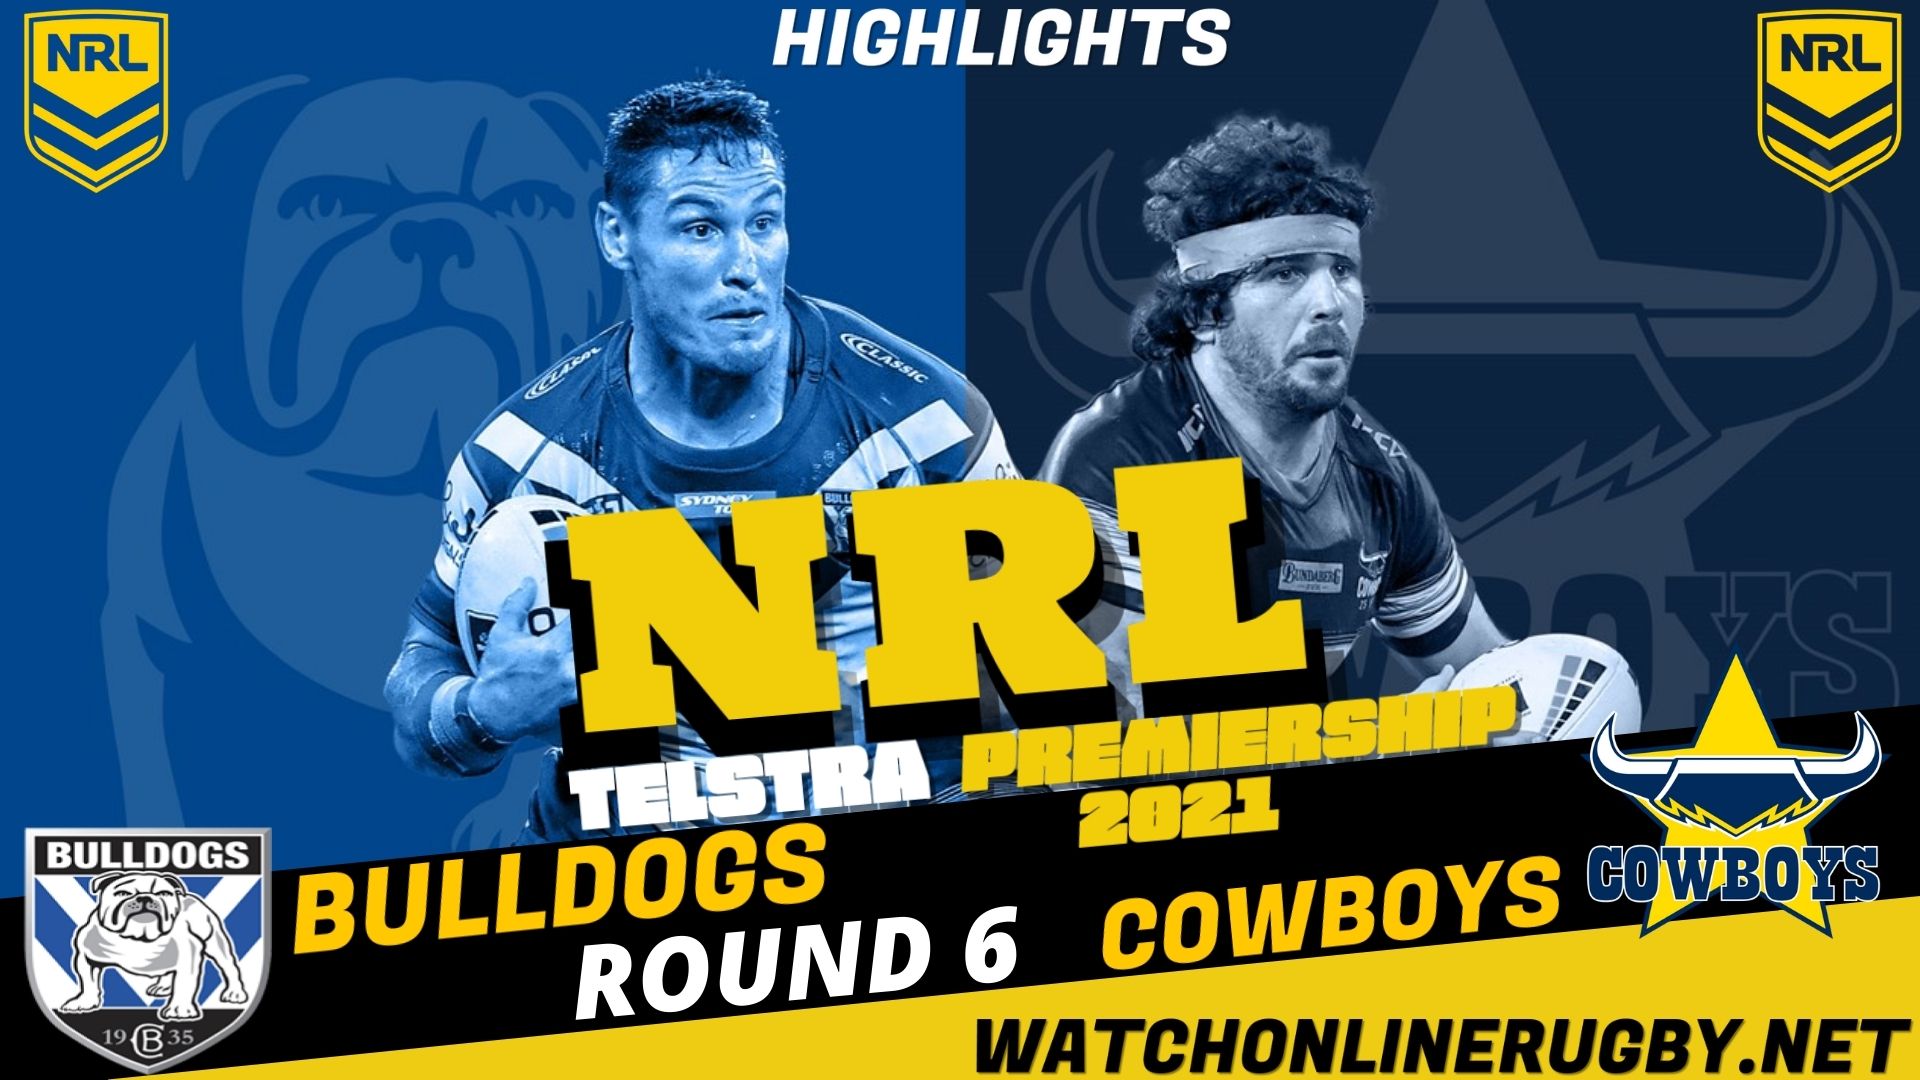 Cowboys Vs Bulldogs Highlights RD 6 NRL Rugby